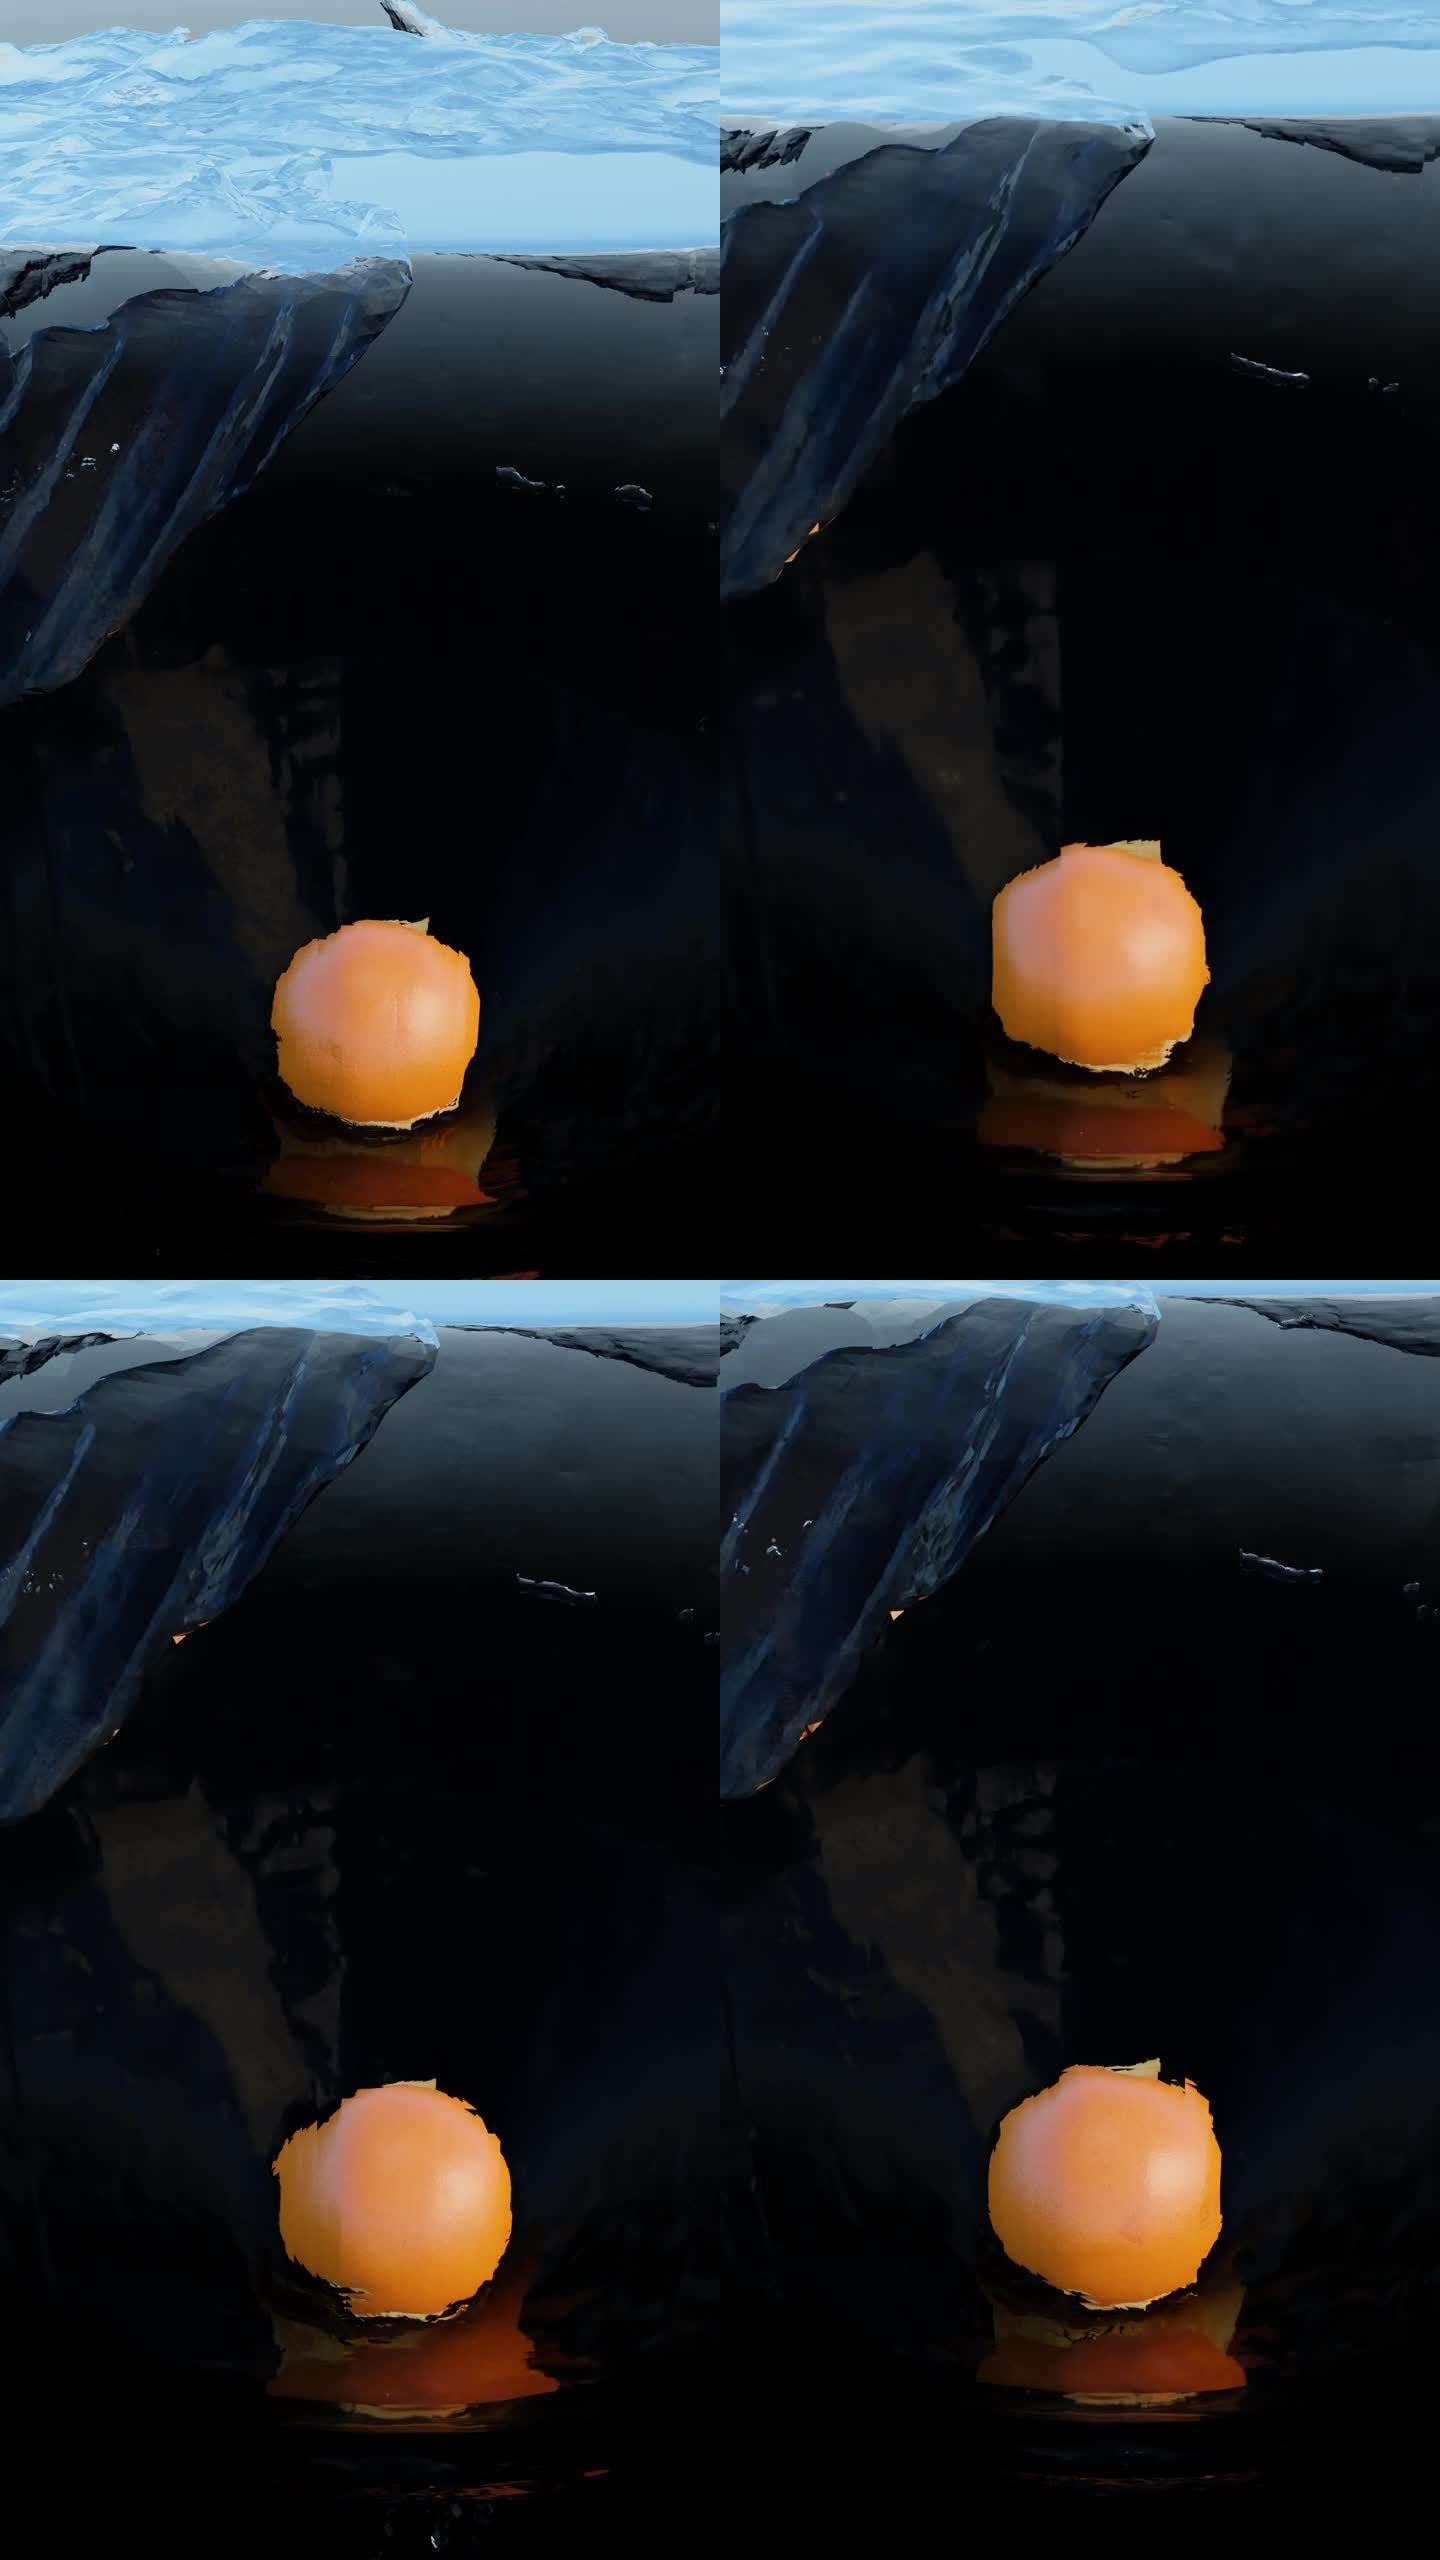 模拟水花飞溅和柑橘类水果穿过水下波浪和冰块到达深度的三维动画缩放和倾斜镜头运动